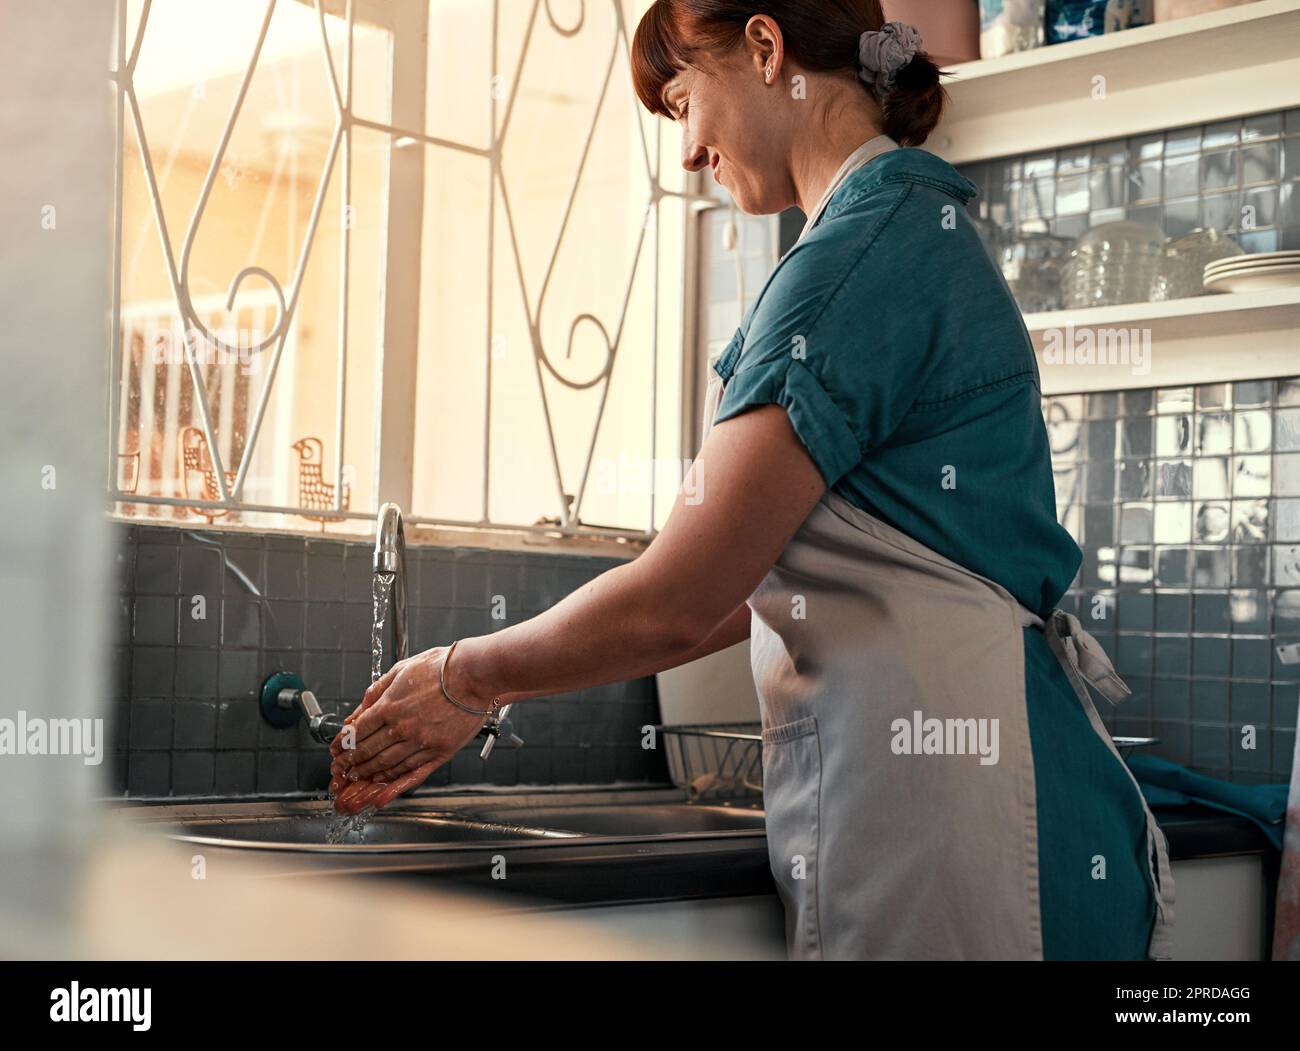 Halten Sie Ihre Hände immer keimfrei. Eine attraktive junge Frau, die sich in ihrer Küche zu Hause die Hände wäscht. Stockfoto